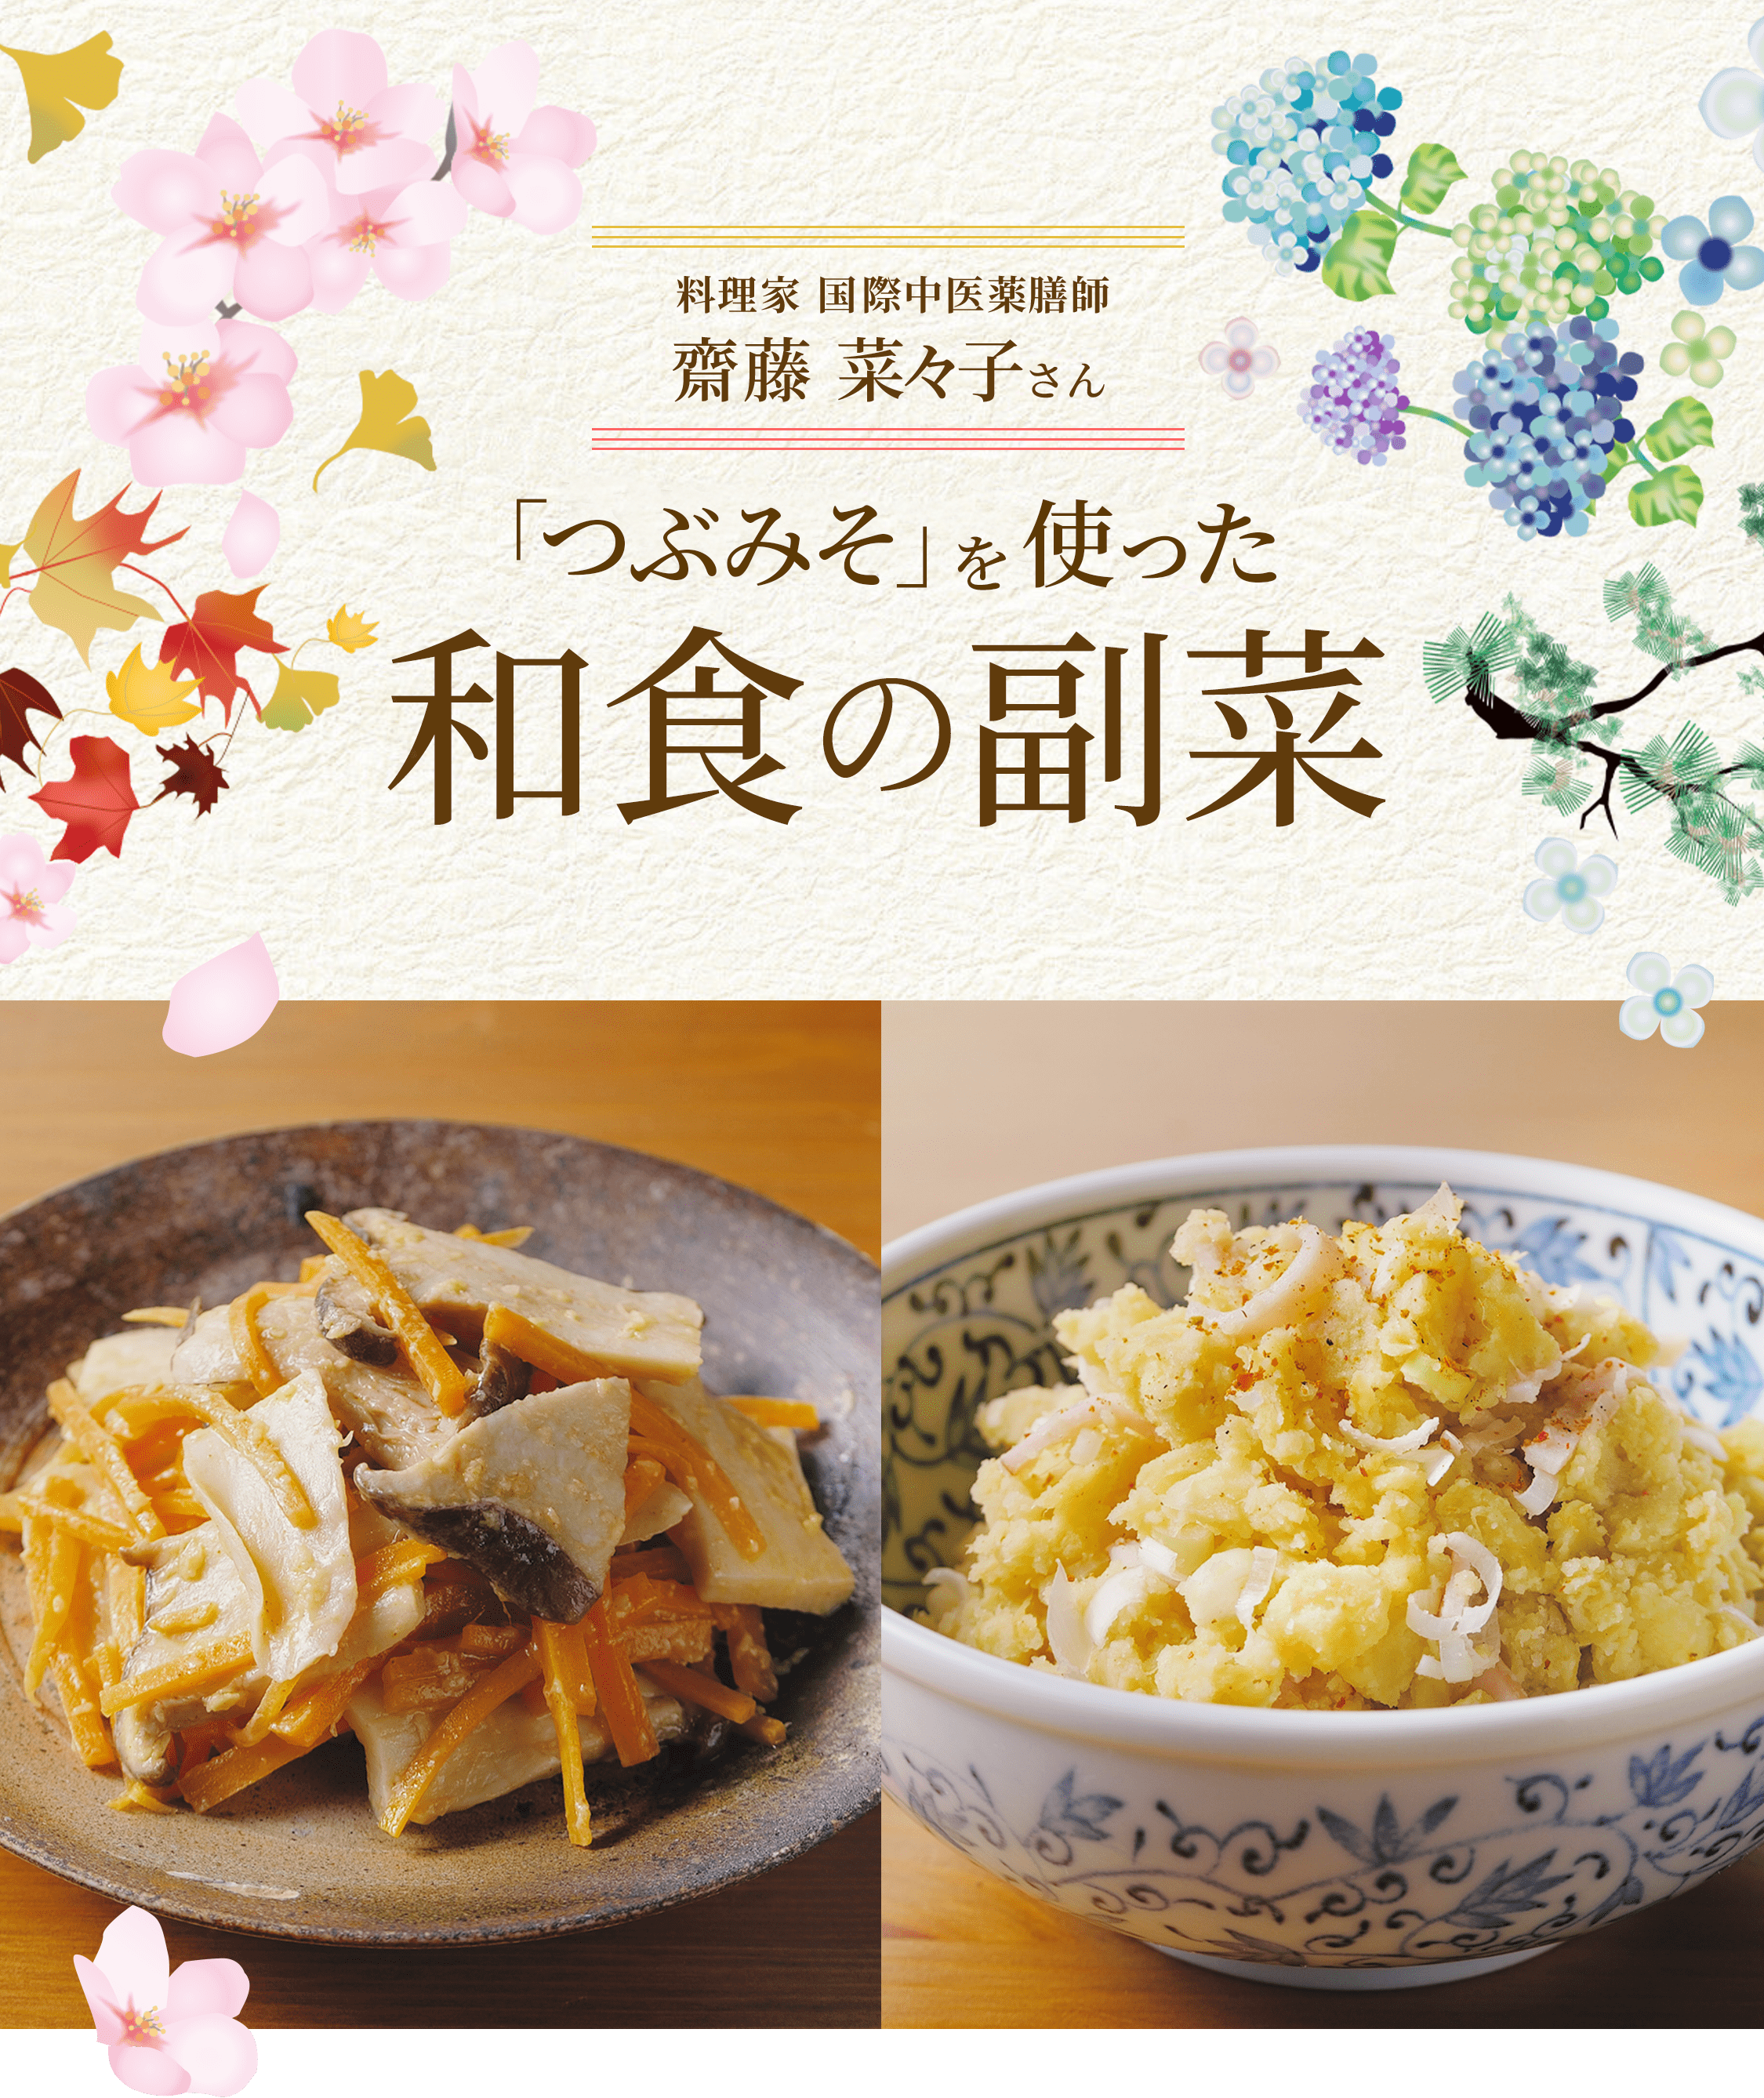 料理家 国際中医薬膳師 斎藤菜々子さん 「つぶみそ」を使った 和食の副菜